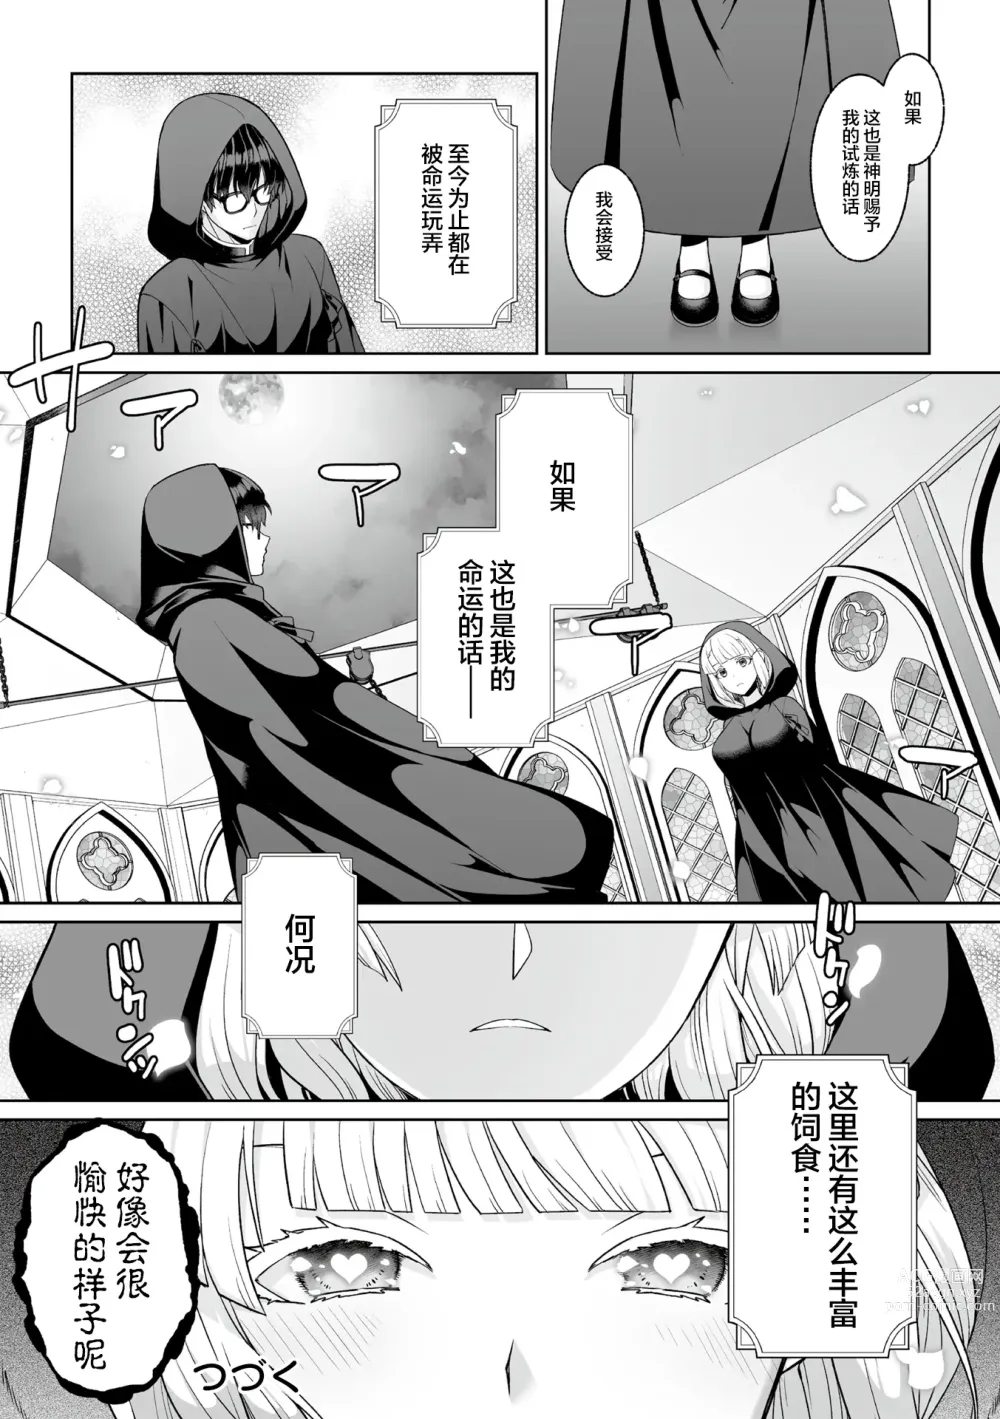 Page 25 of manga Tsukitei no Seijo Inmitsu no Utage Ch. 1